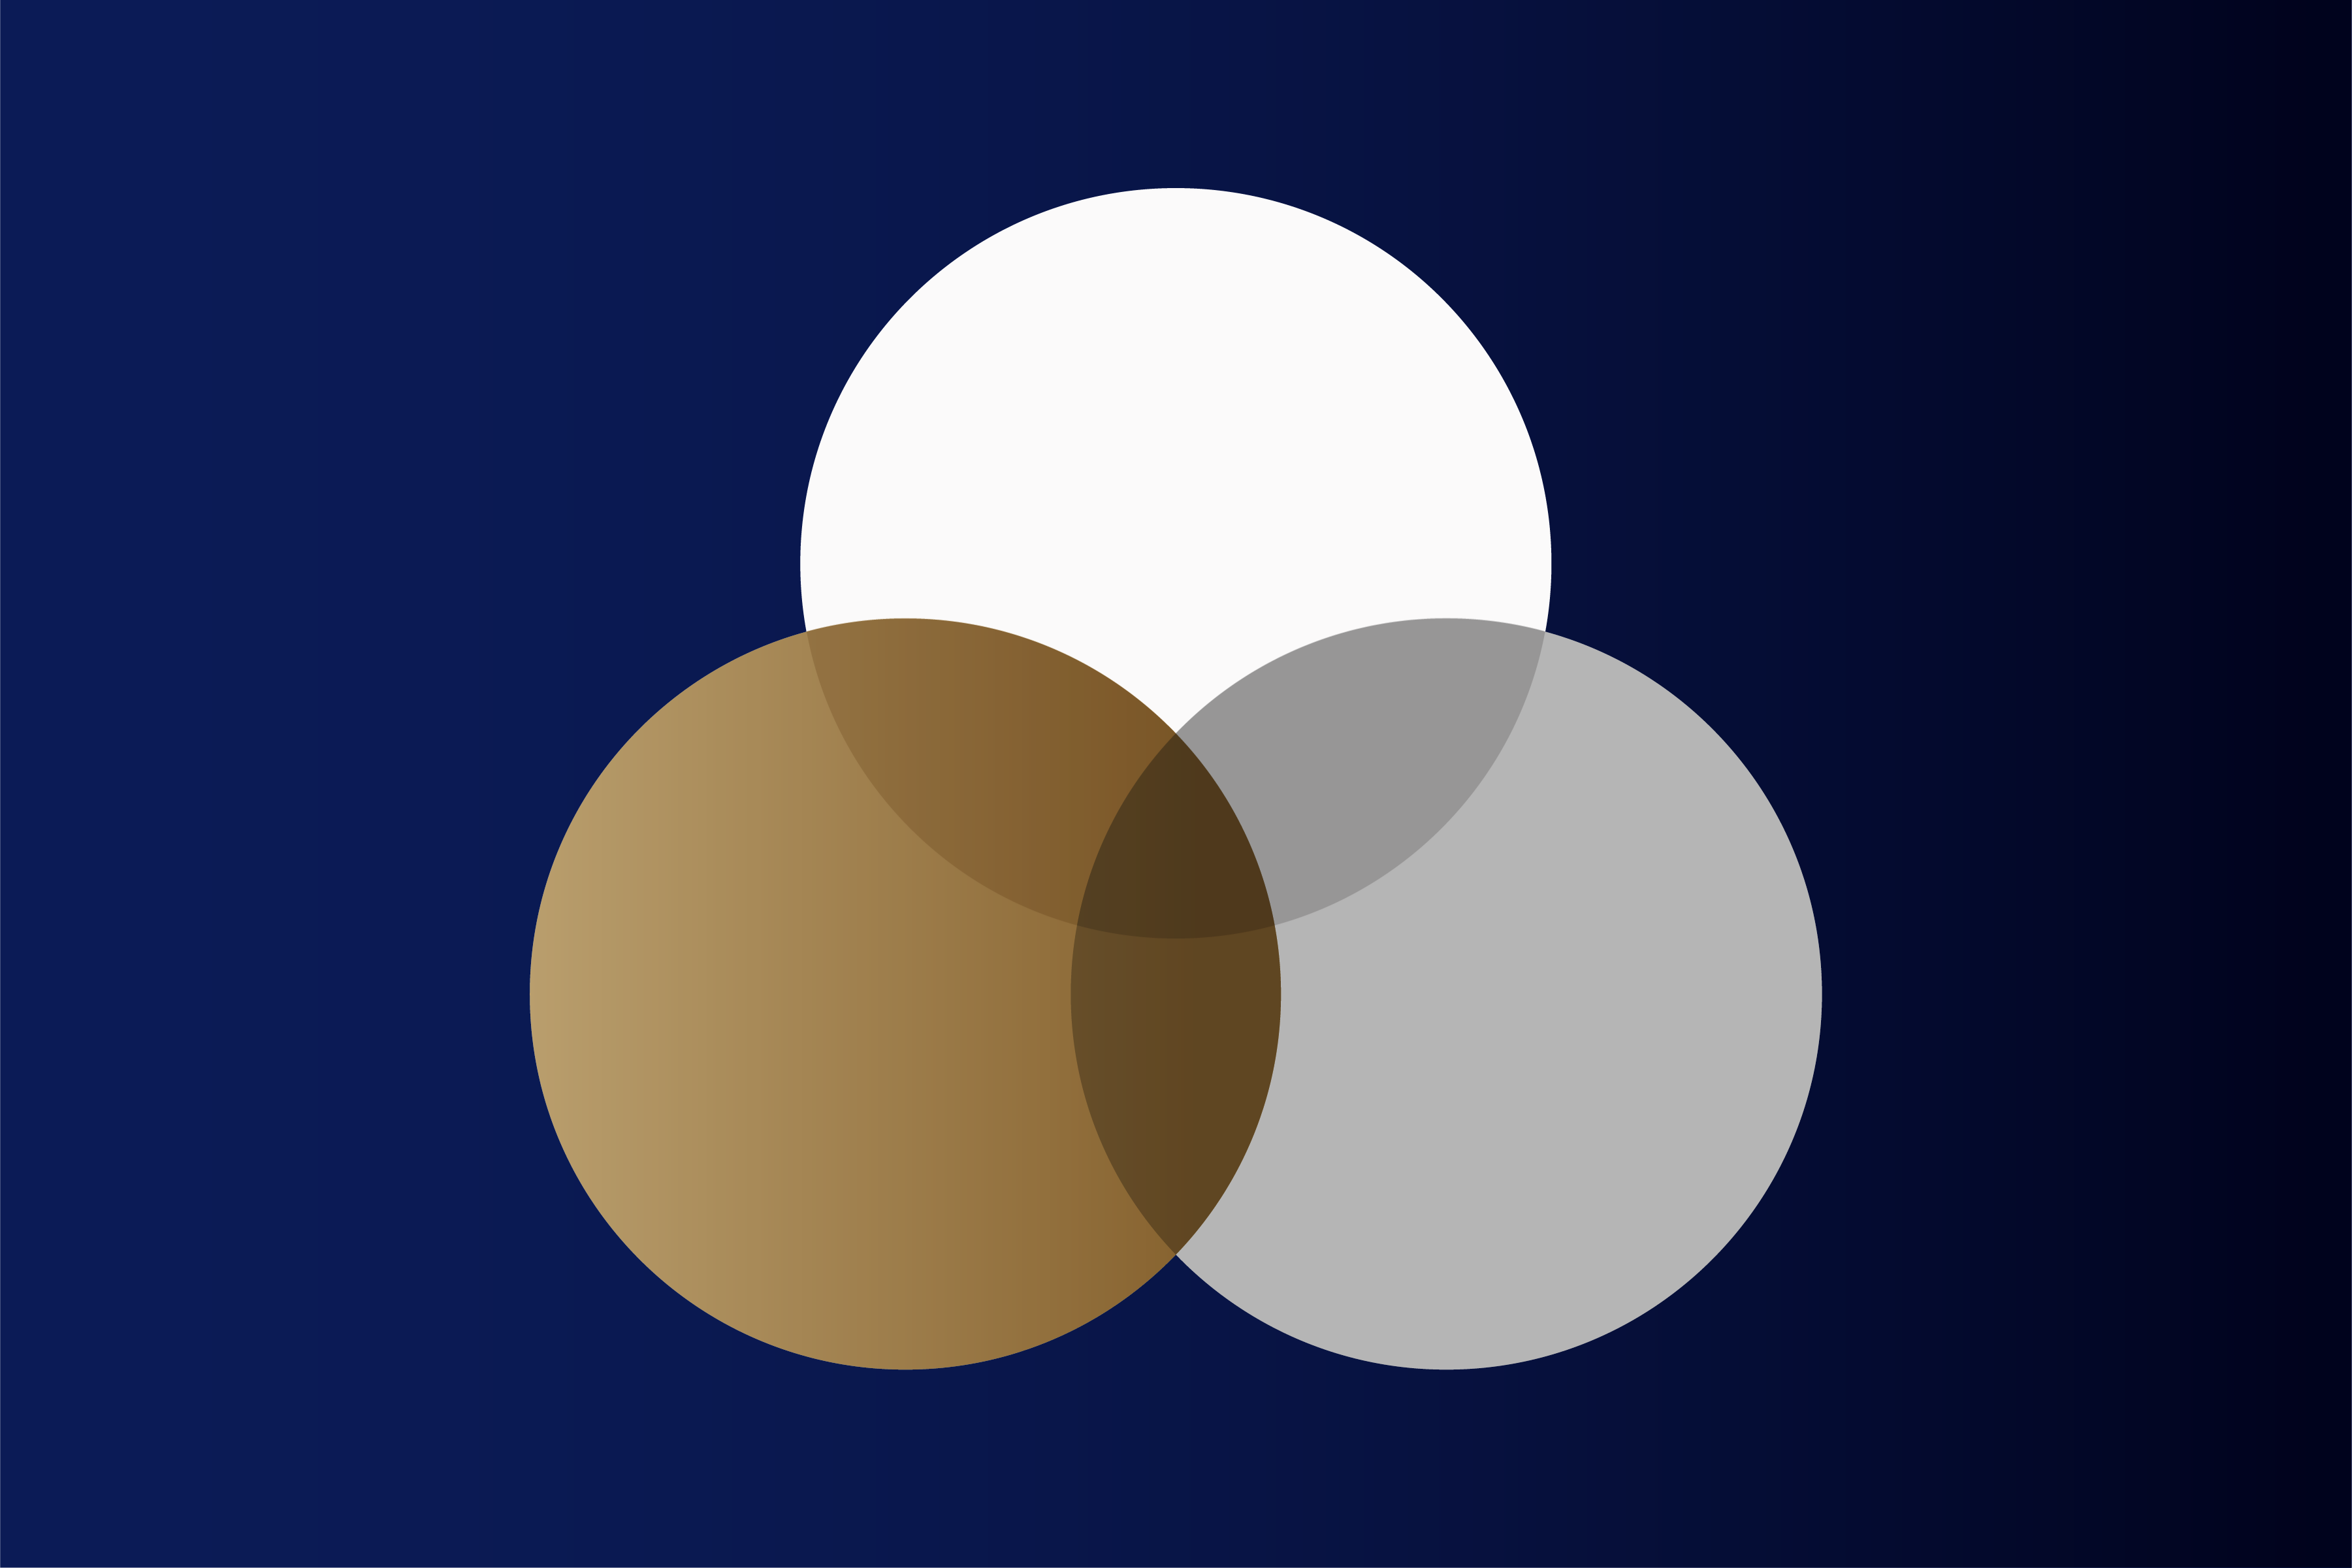 Logo Transdisciplinary Innovation: Drei sich überschneidende Kreise